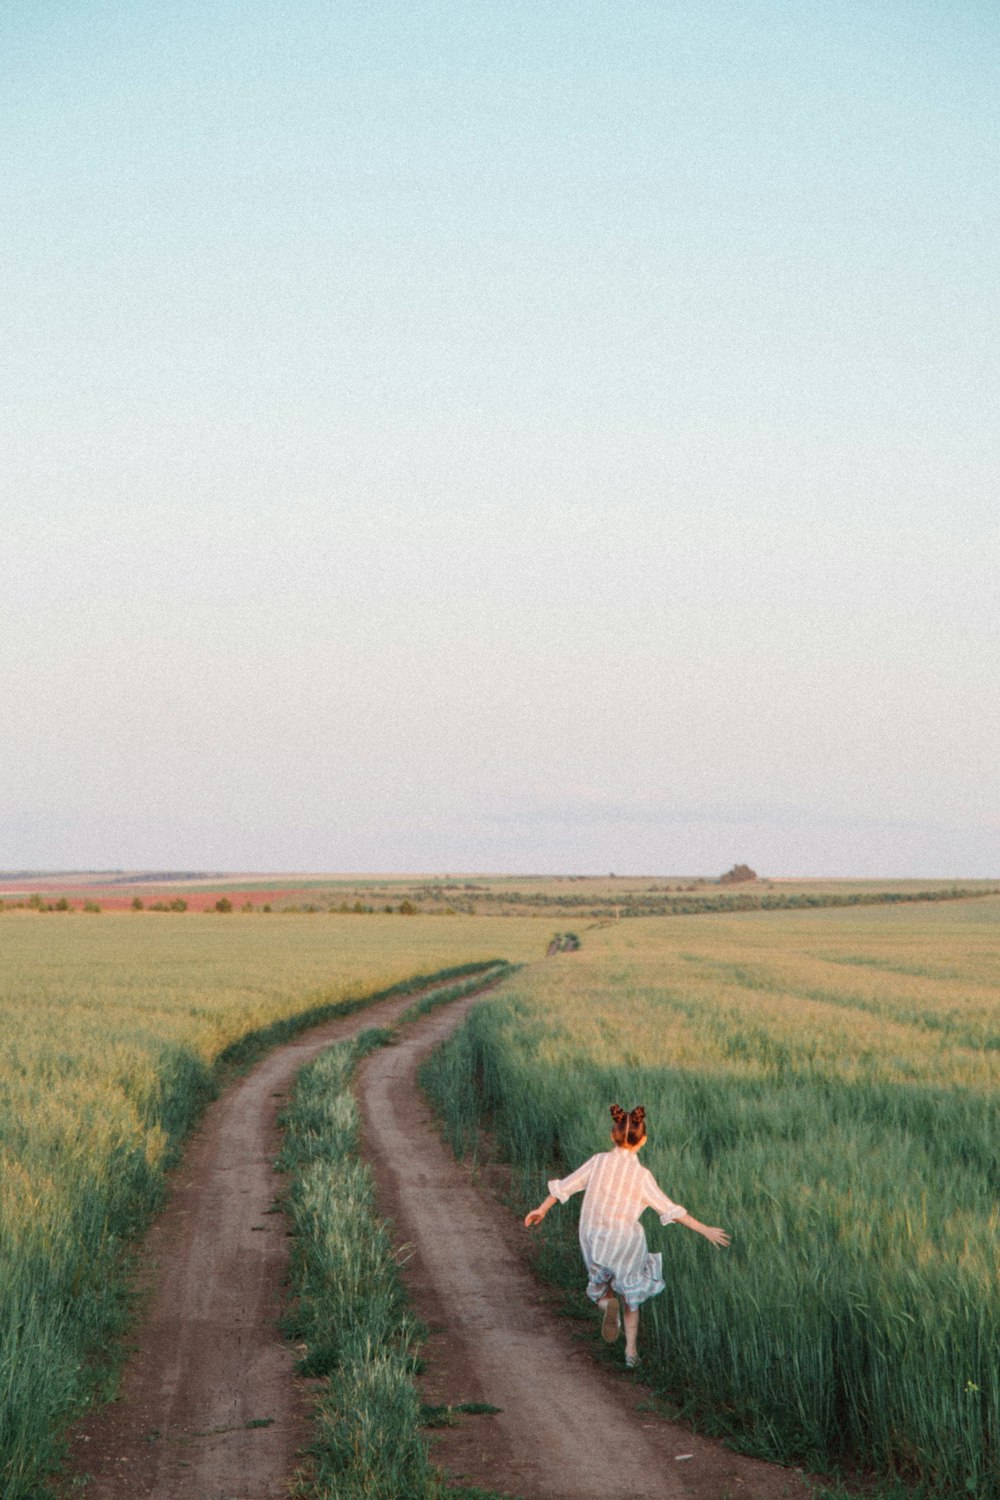 하얀 드레스 셔츠를 입은 남자가 낮에 푸른 잔디밭 사이의 갈색 흙길을 걷고 있다